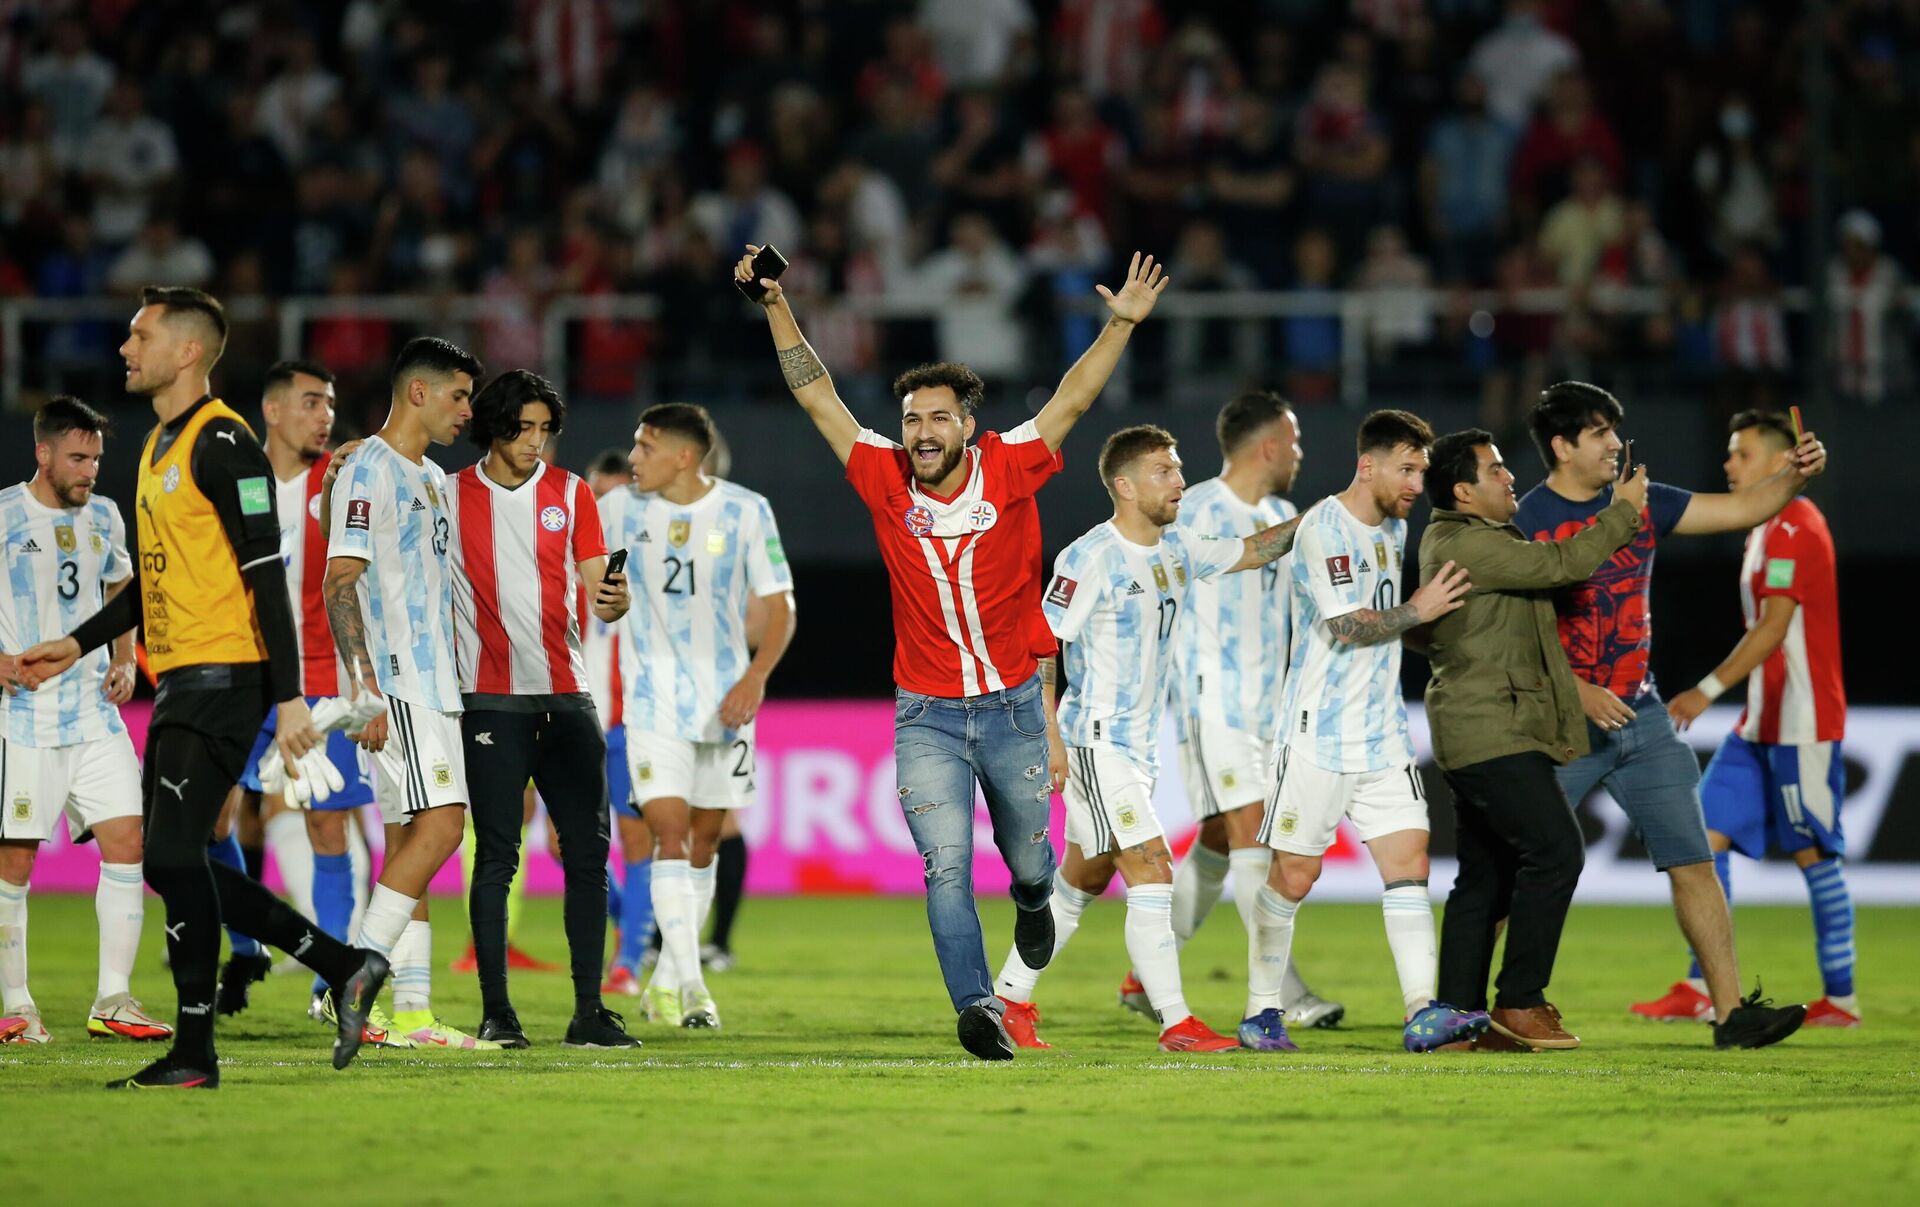 Un fanático paraguayo celebra luego de haberse tomado una fotografía con Lionel Messi en el campo de juego - Sputnik Mundo, 1920, 08.10.2021